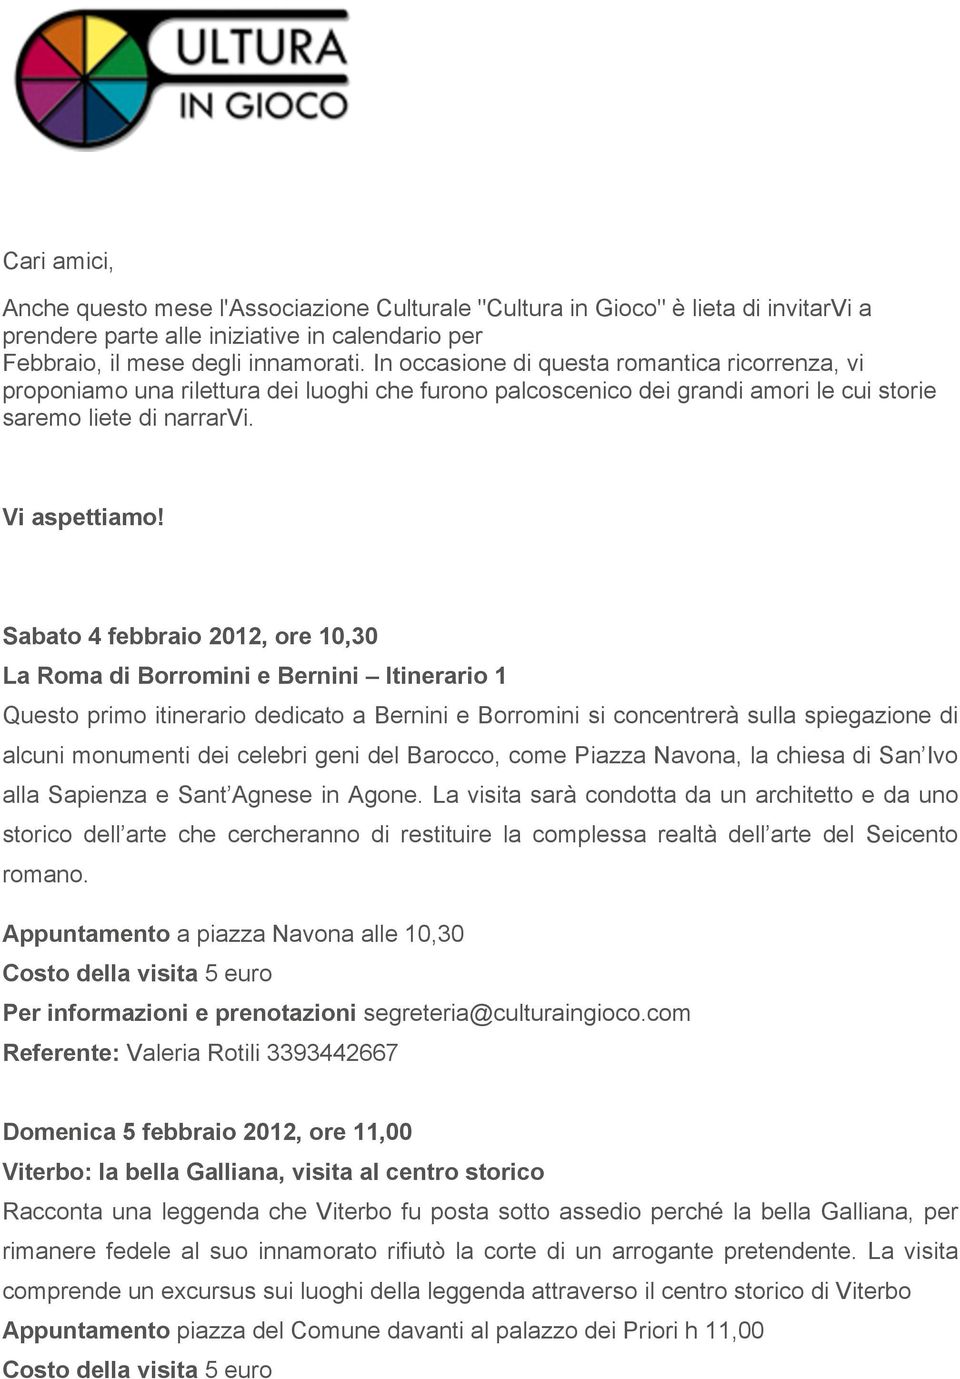 Sabato 4 febbraio 2012, ore 10,30 La Roma di Borromini e Bernini Itinerario 1 Questo primo itinerario dedicato a Bernini e Borromini si concentrerà sulla spiegazione di alcuni monumenti dei celebri